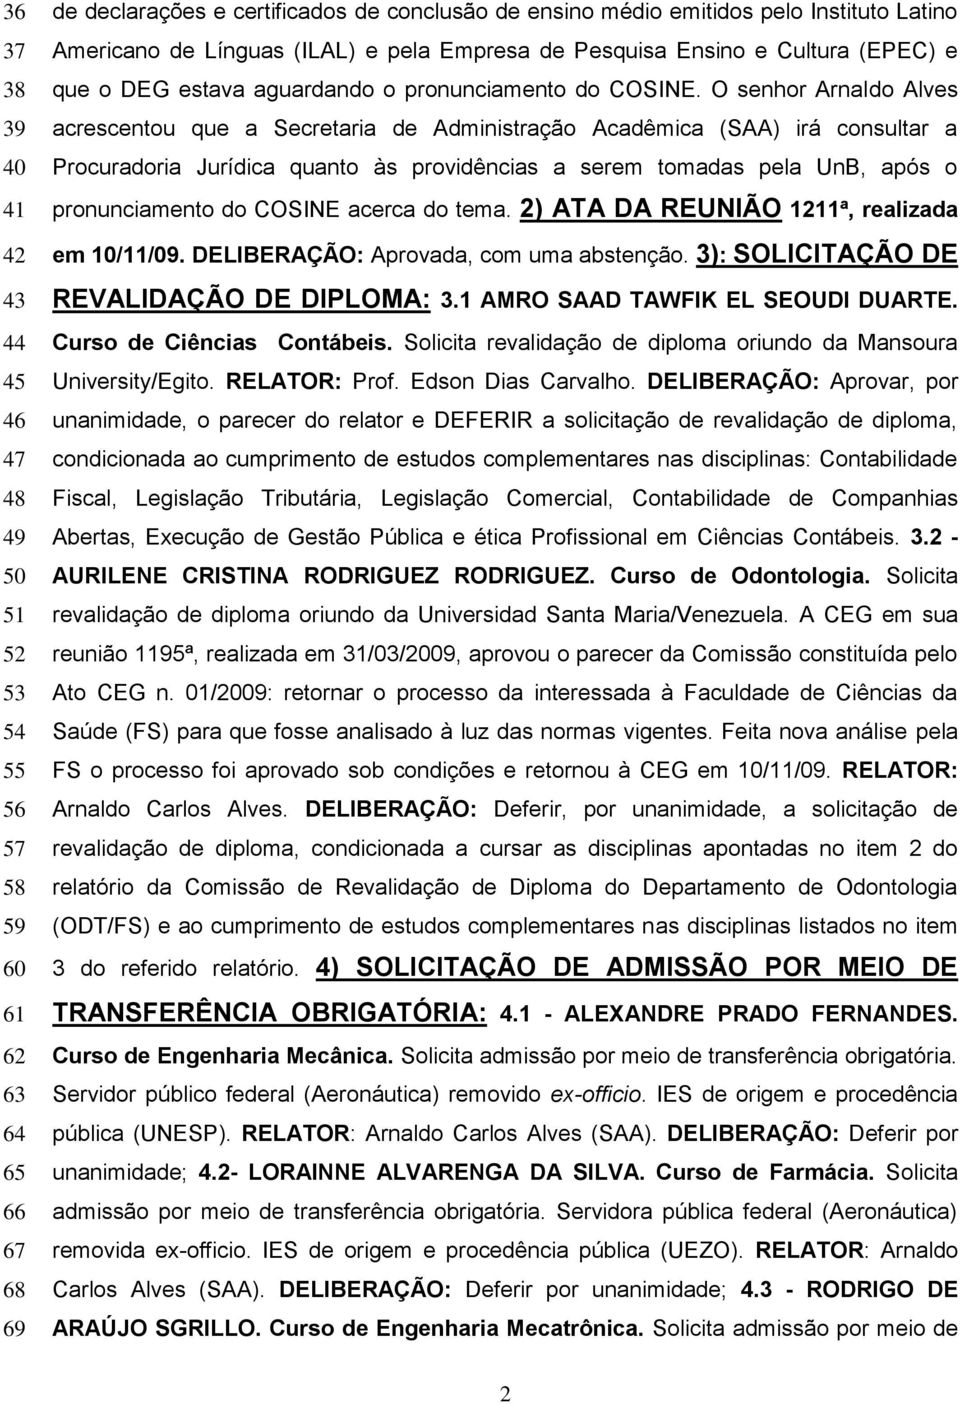 O senhor Arnaldo Alves acrescentou que a Secretaria de Administração Acadêmica (SAA) irá consultar a Procuradoria Jurídica quanto às providências a serem tomadas pela UnB, após o pronunciamento do